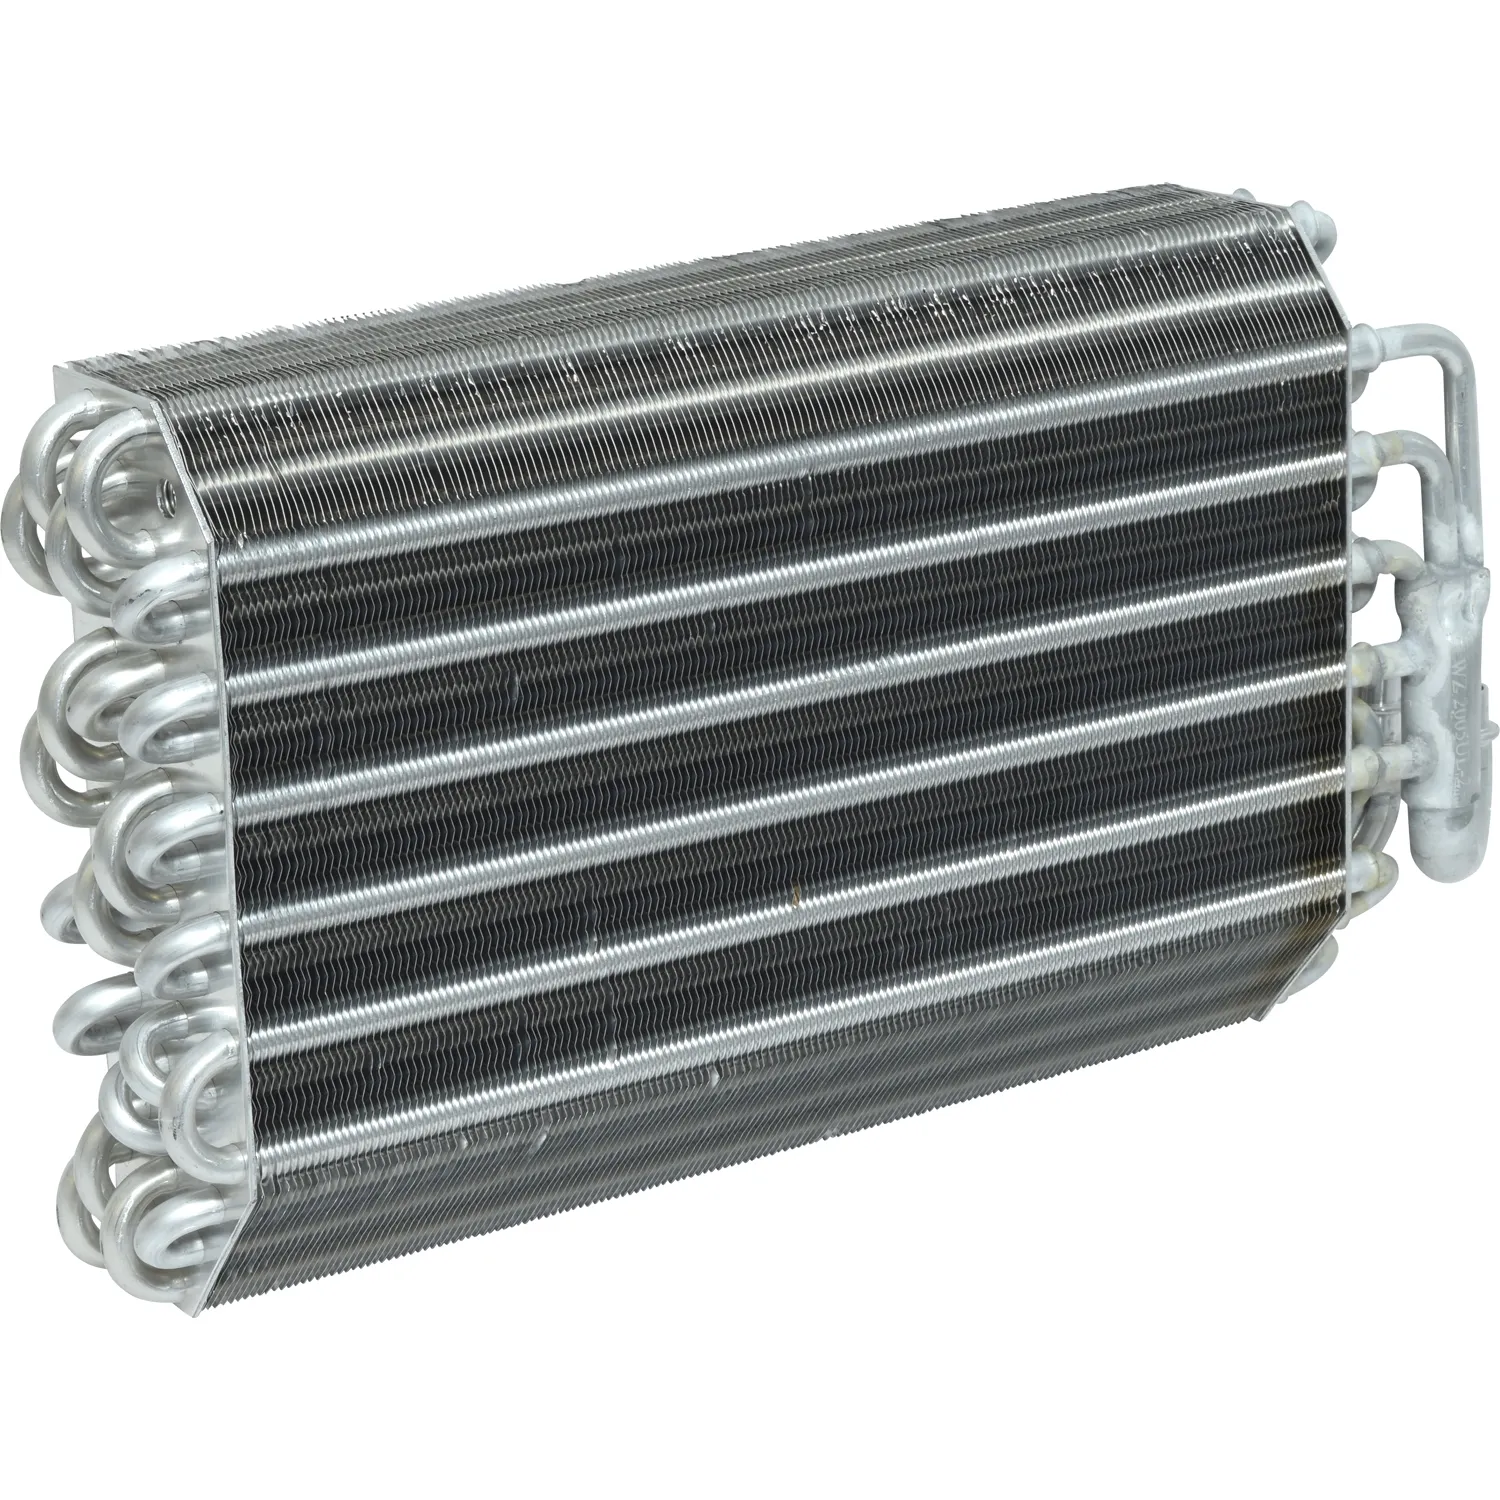 Otomatik AC hava soğutma klima için evaporatör soğutma bobini bmw 540i 97-00 528i 97-99 E39 OEM 64118363782